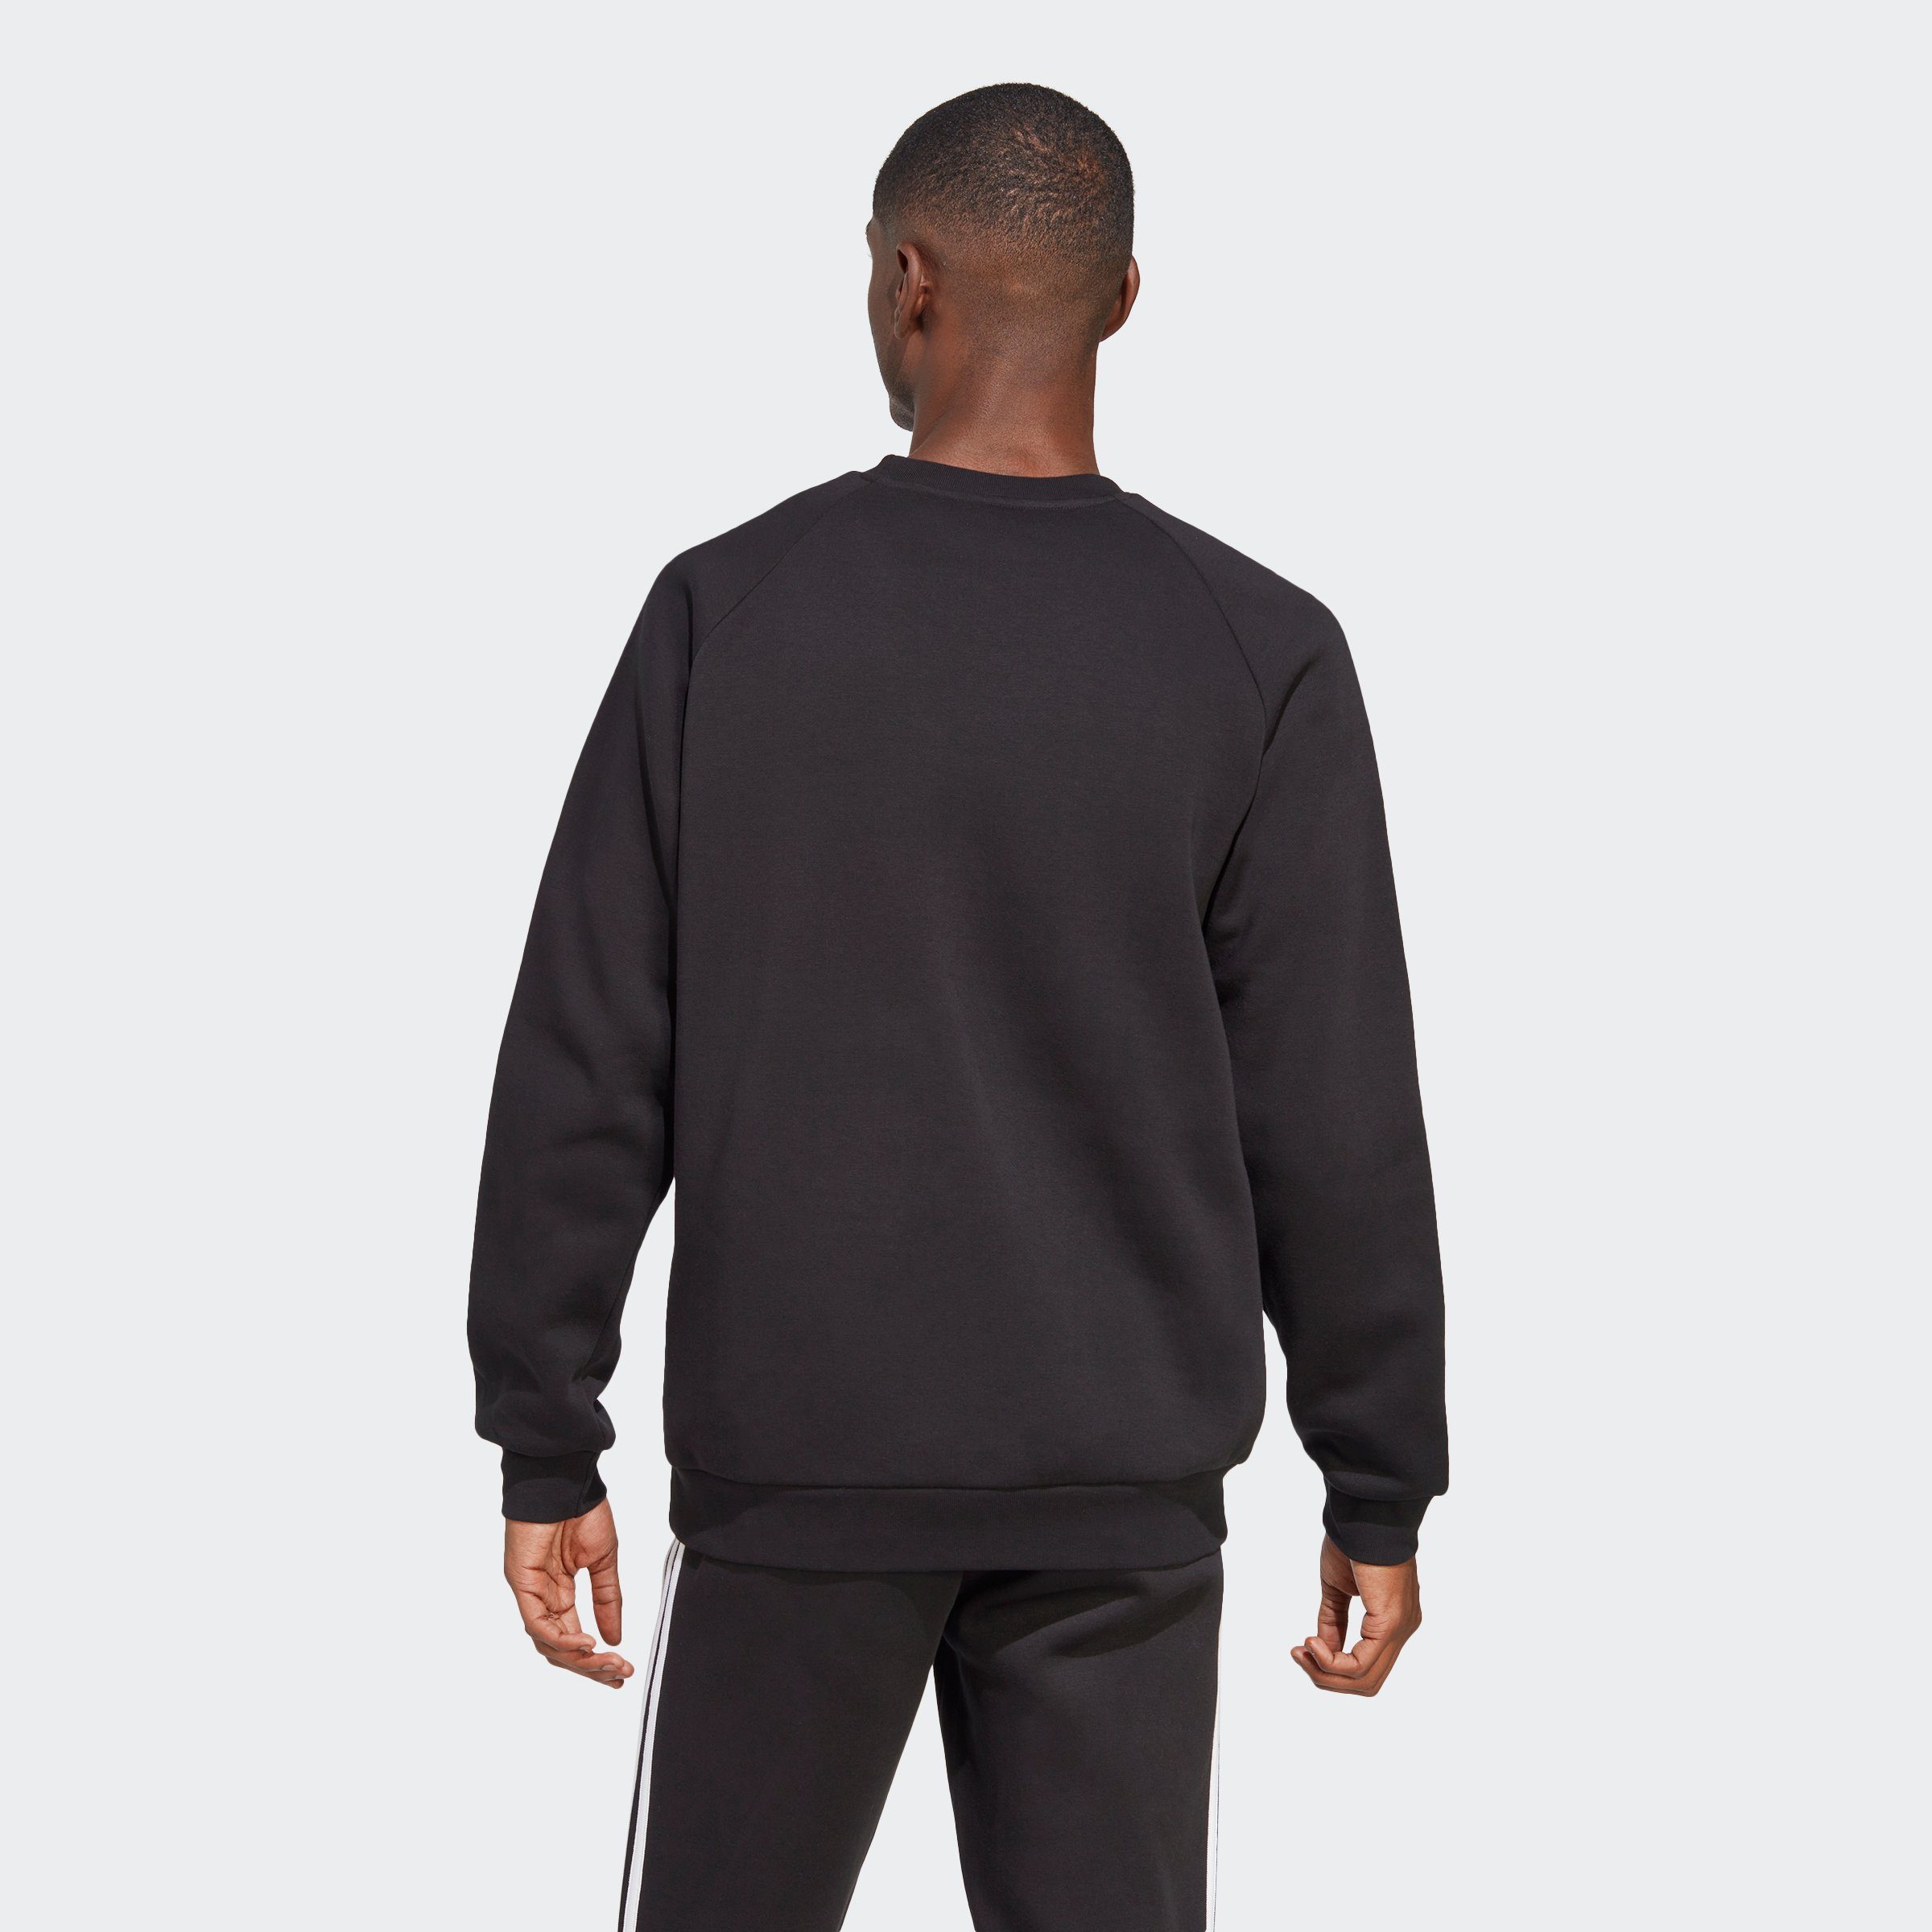 ADICOLOR Sweatshirt Black CLASSICS Originals 3-STREIFEN adidas